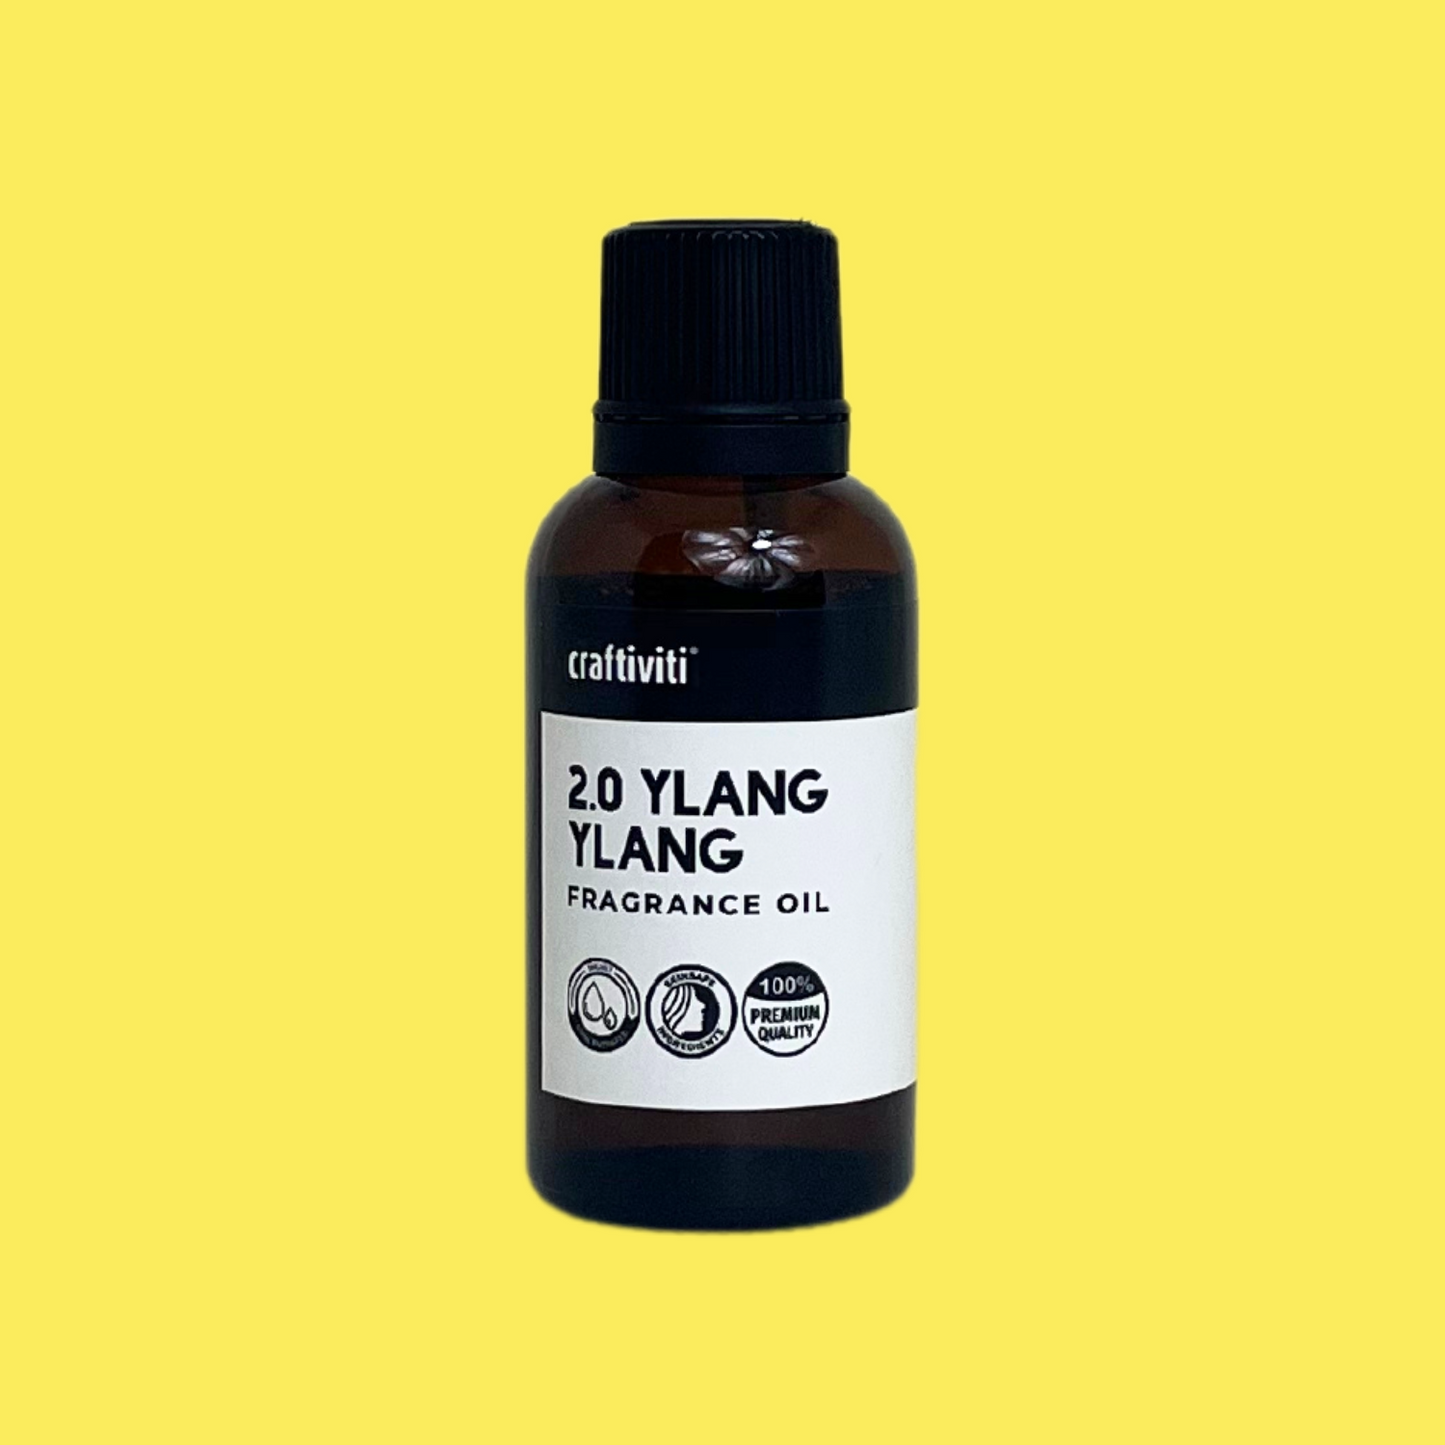 2.0 Ylang Ylang Fragrance Oil